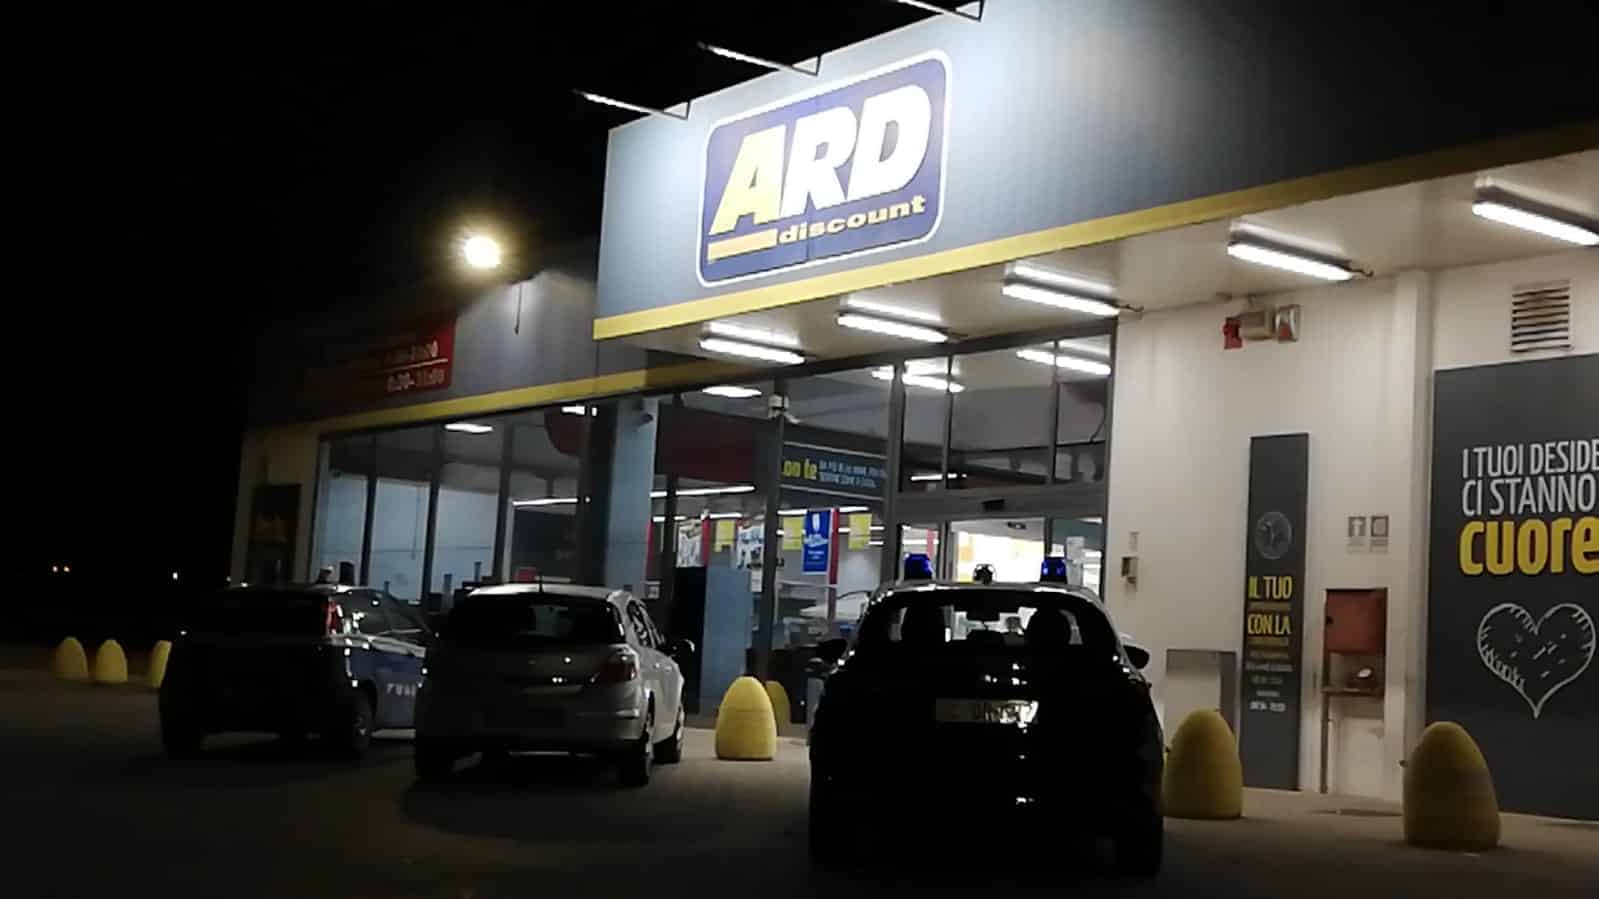 Shock nel parcheggio del supermercato Ard, ritrovato 30enne privo di vita: morto da 4 giorni, probabile omicidio